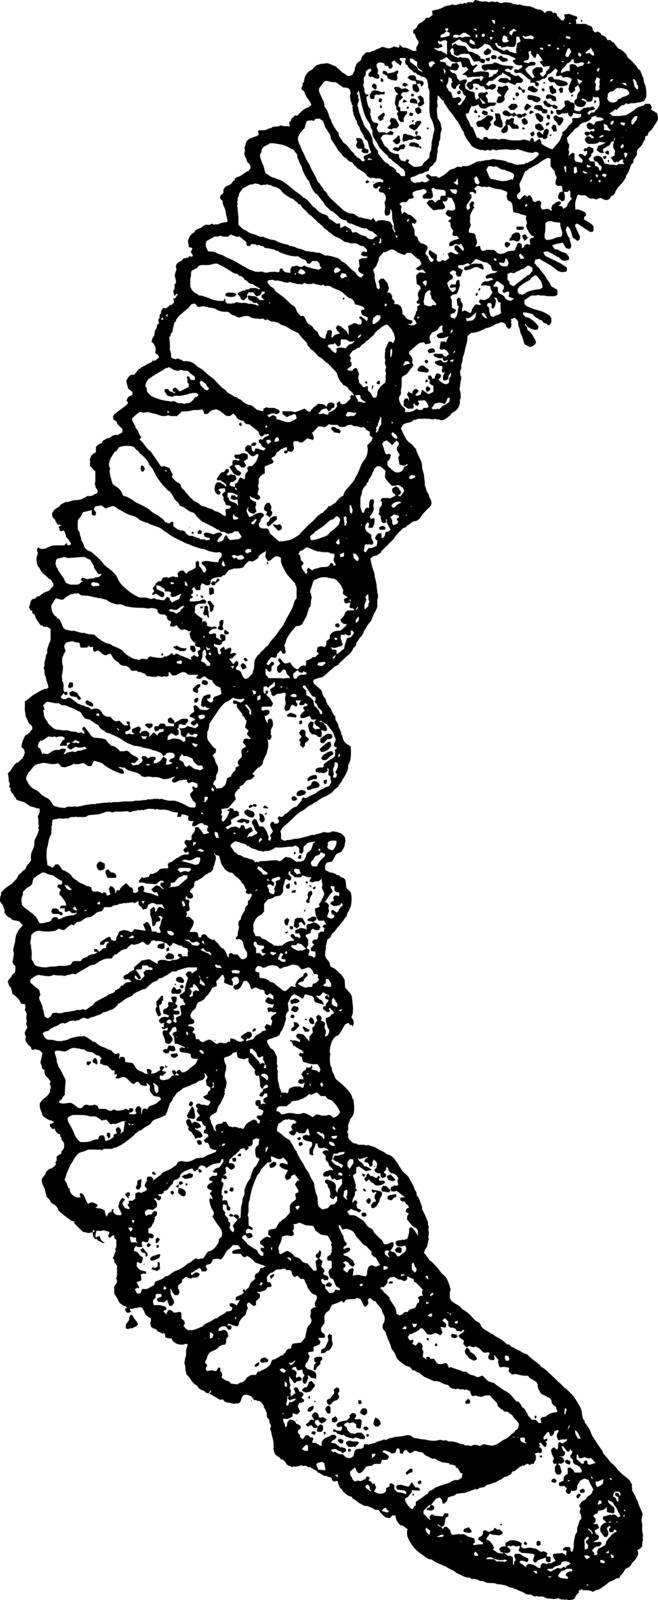 Potato Stalk Borer Larva, vintage illustration. by Morphart